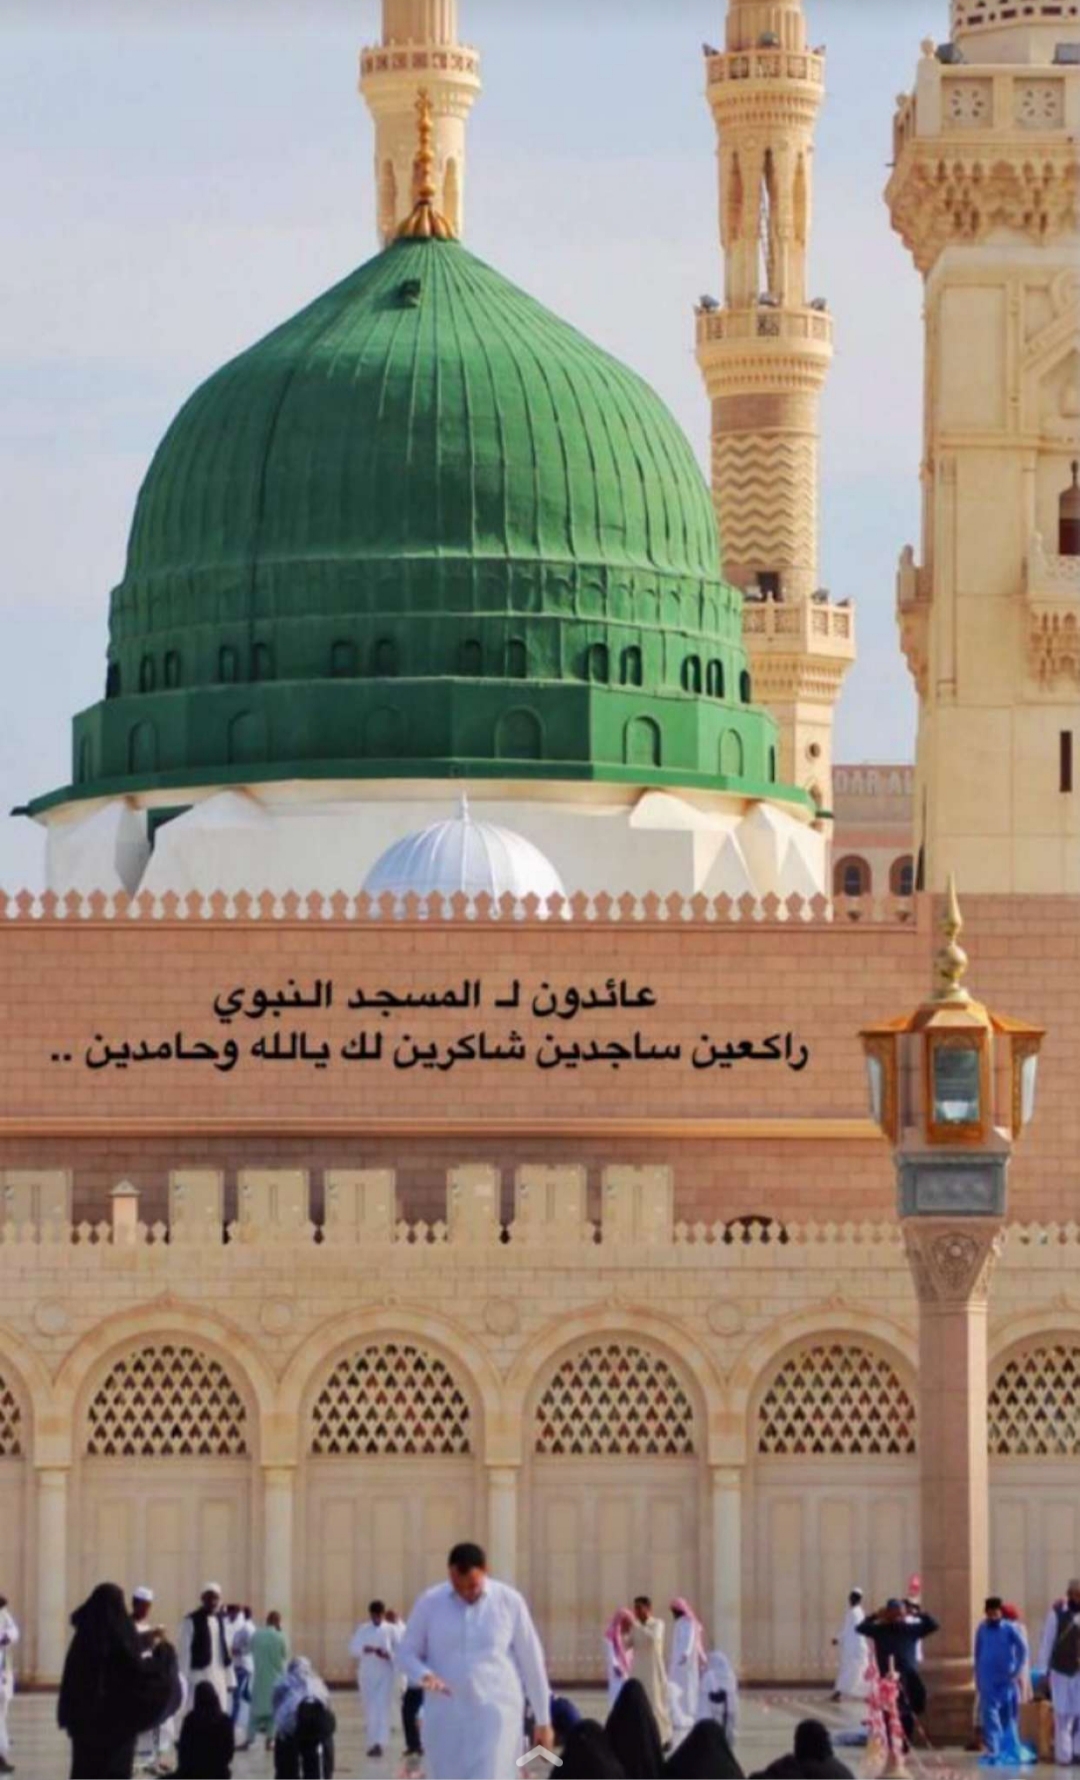 فتح المسجد النبوي تدريجياً اعتباراً من الأحد القادم P_1610hjgwa1